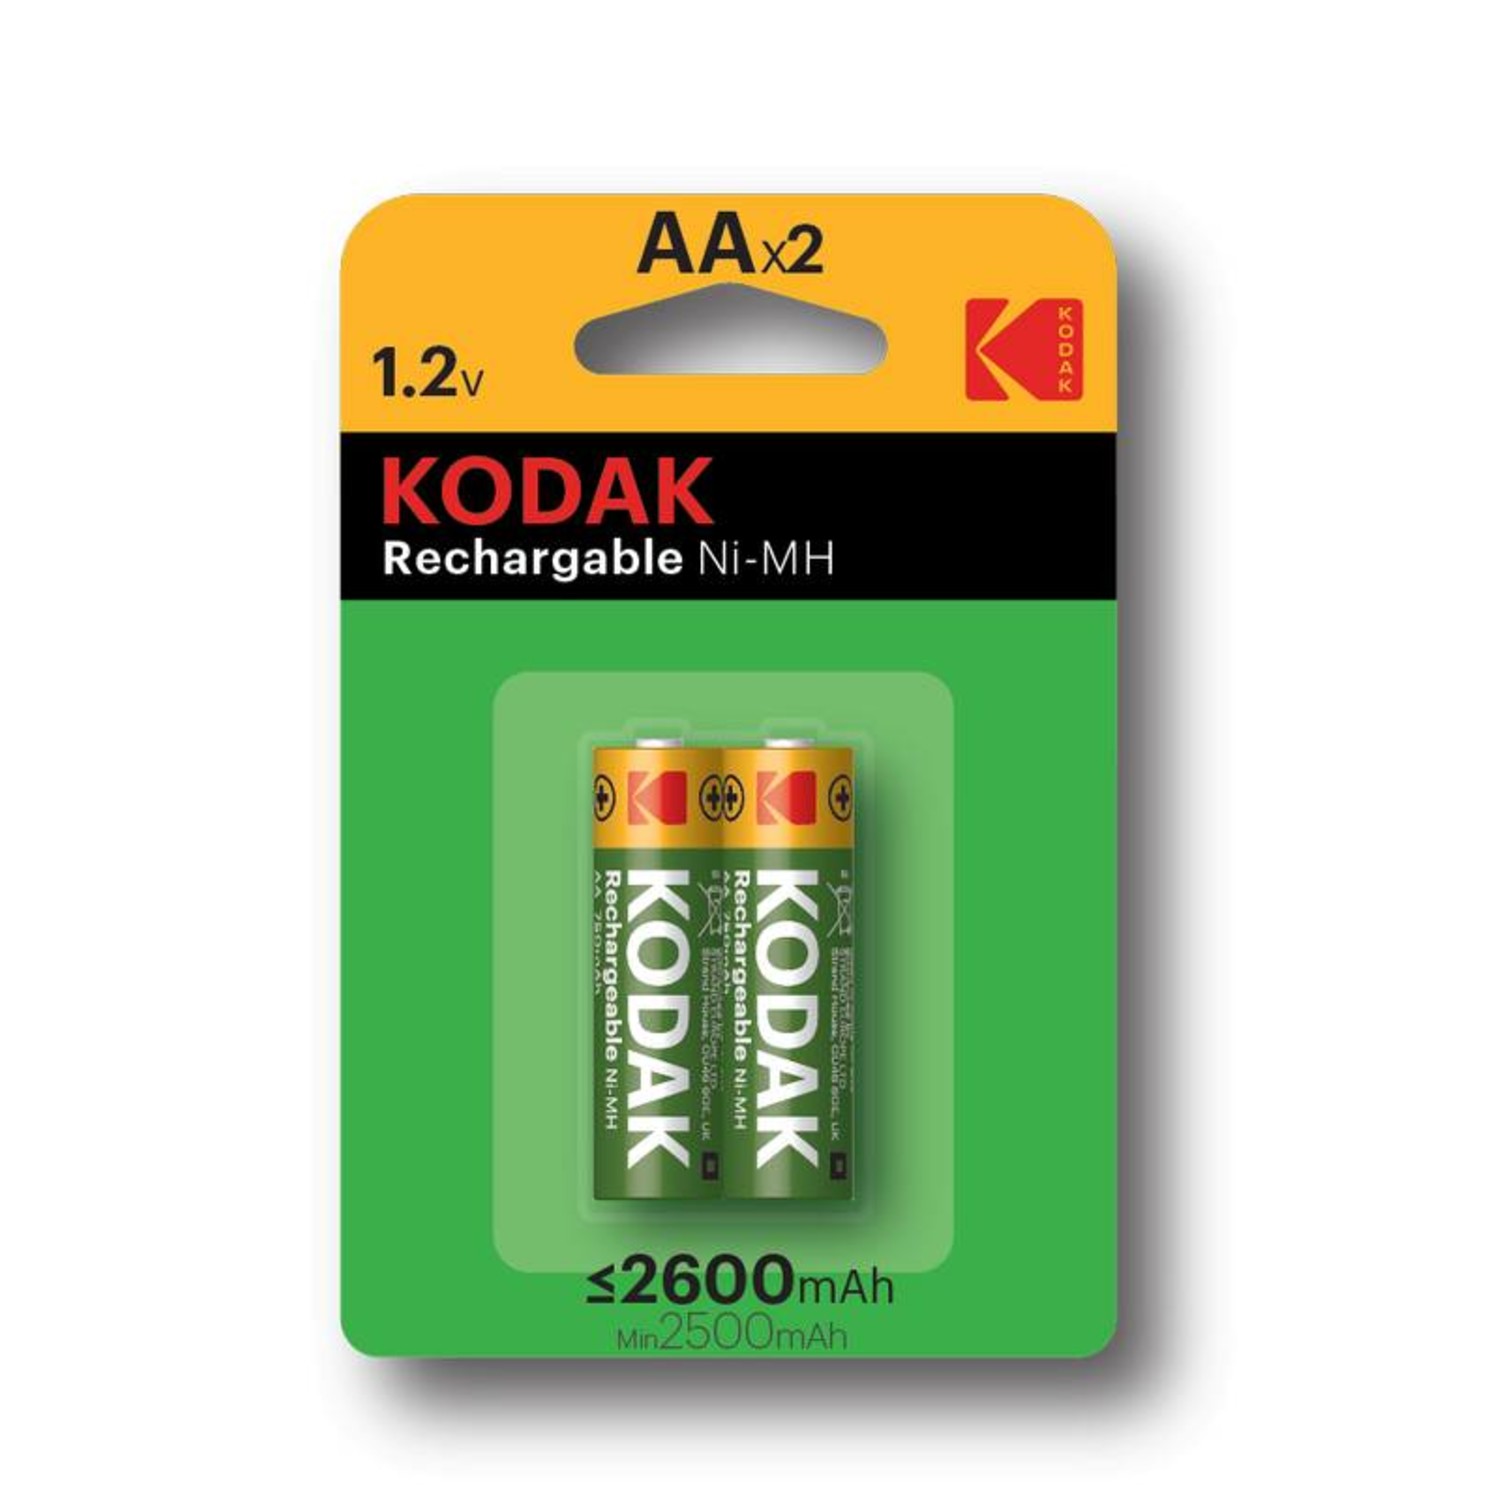 Lijken Sinis herfst Kodak AA 2600mAh Oplaadbare batterijen - Beterbatterij